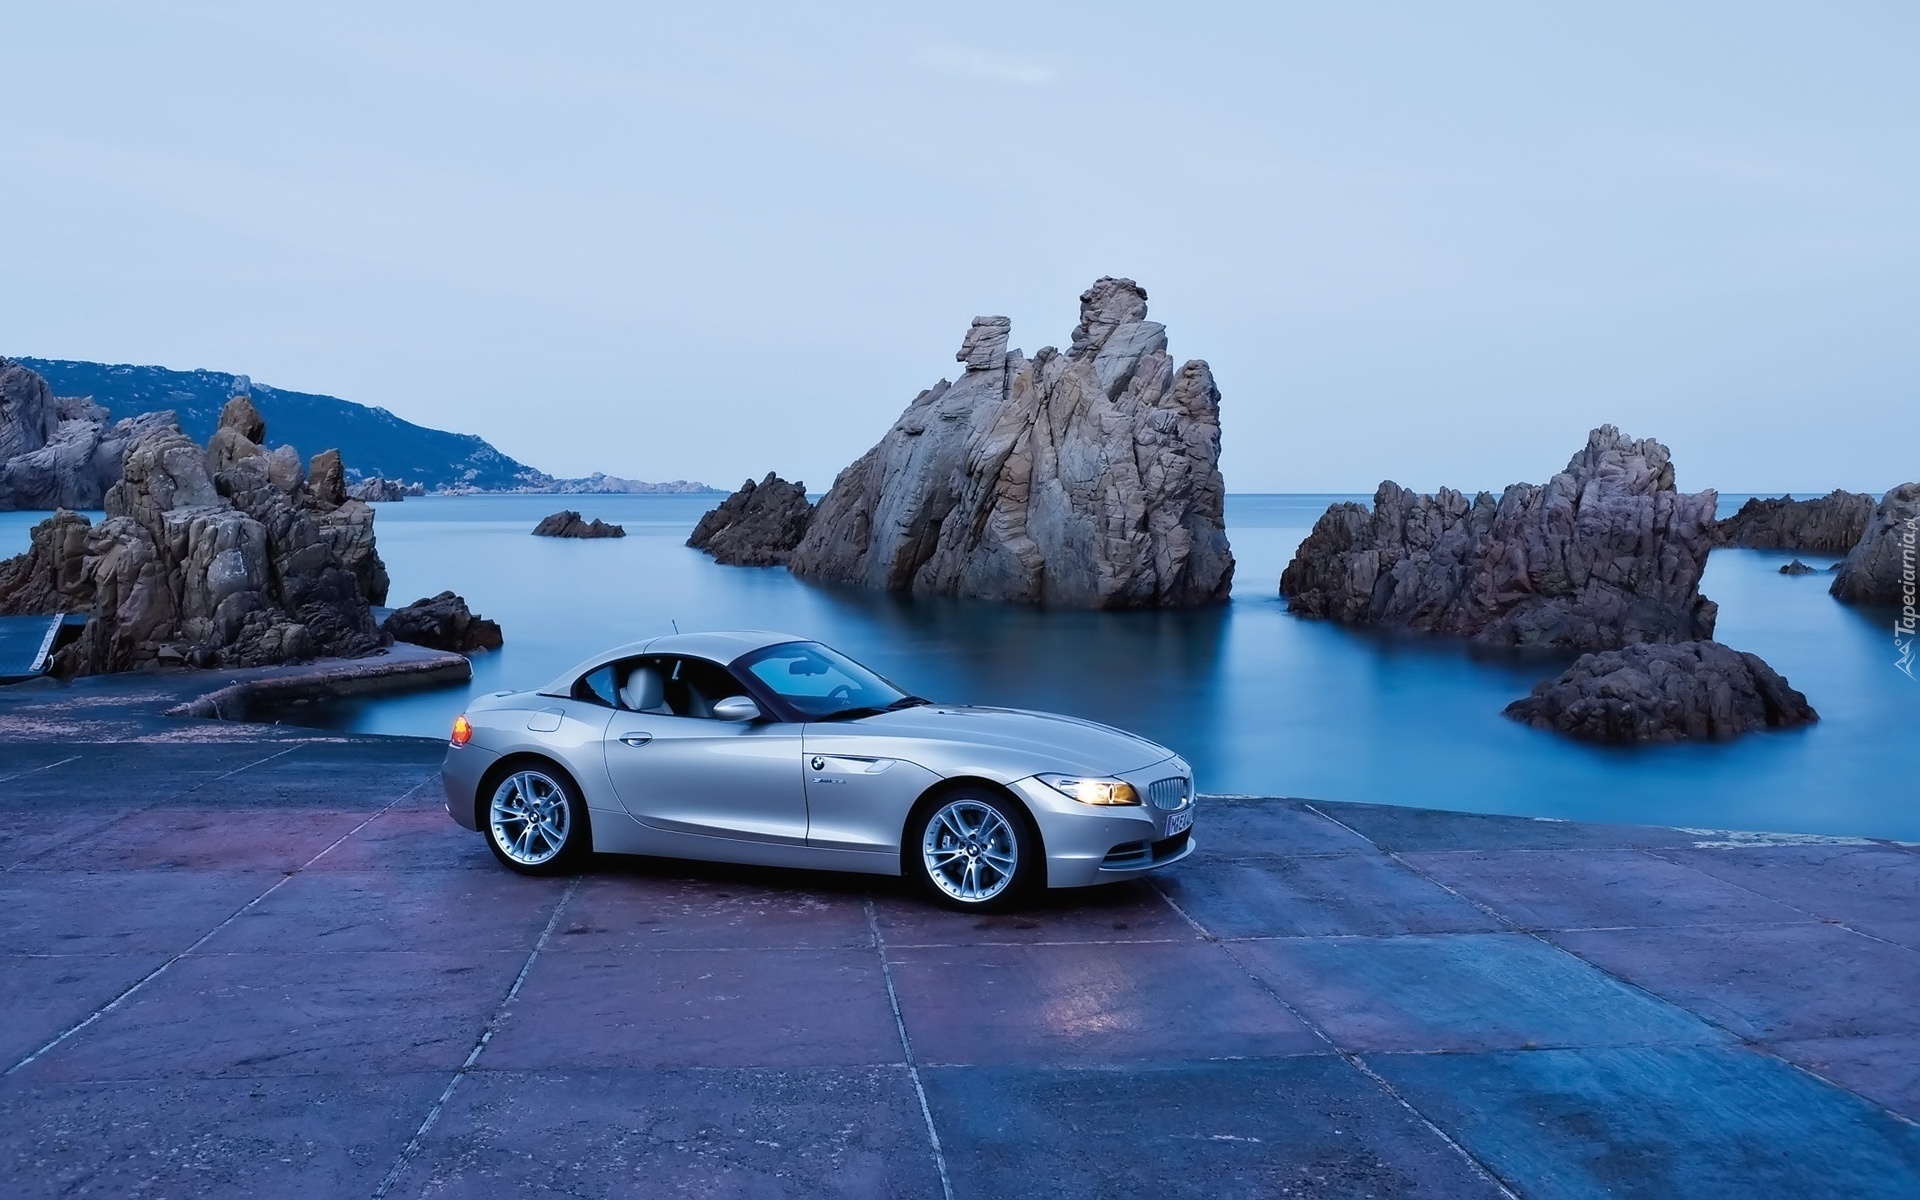 Morze, Klify, Samochód, BMW Z4 Roadster